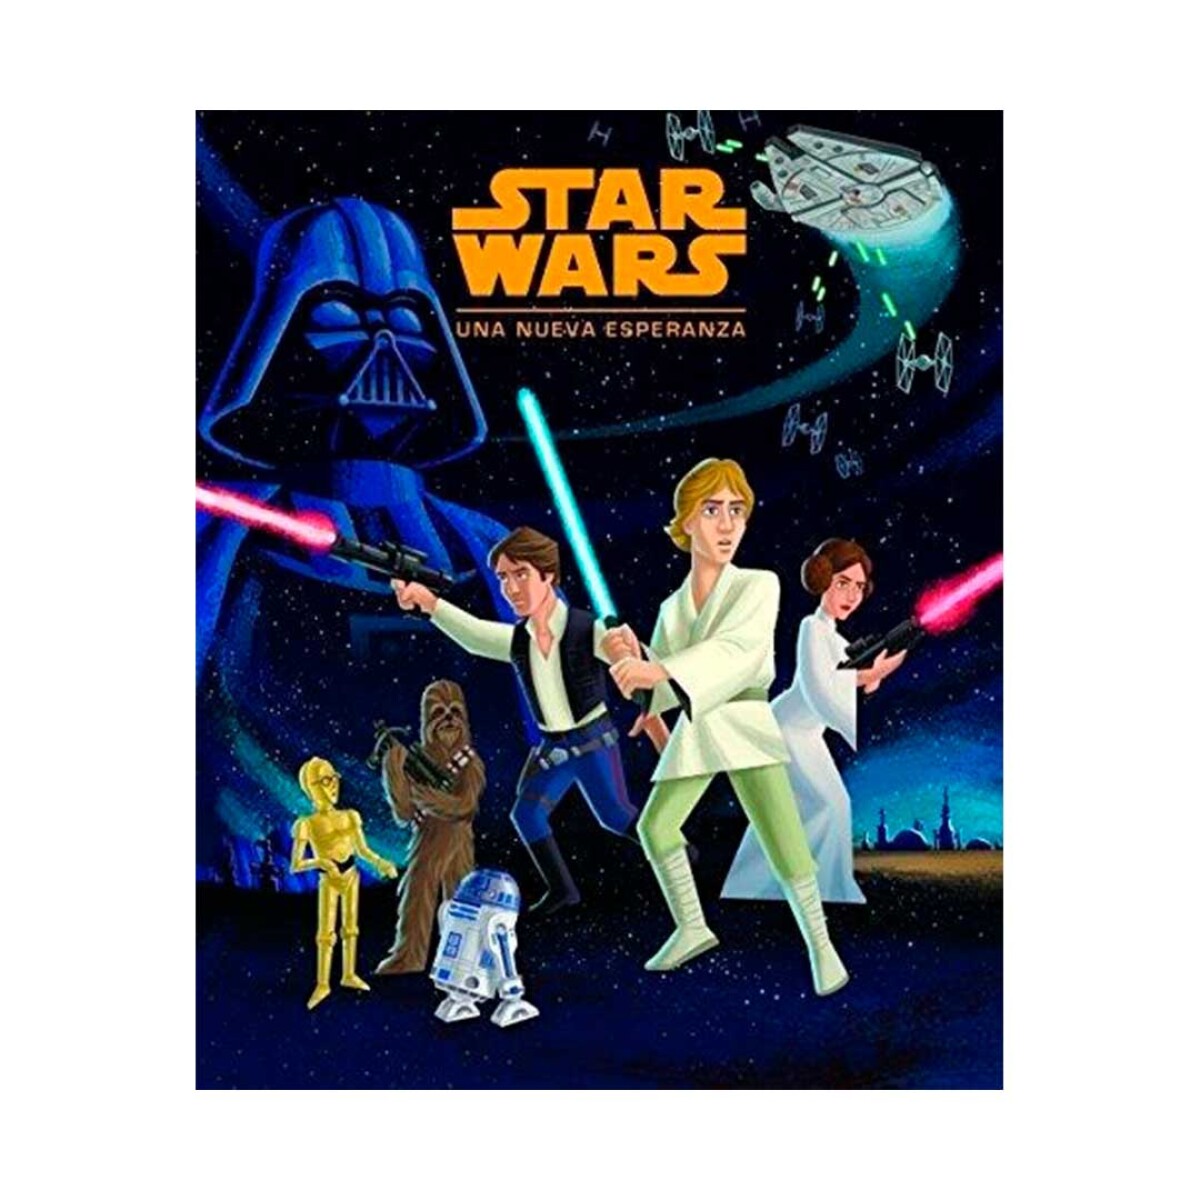 LIbro Star wars Una nueva esperanza Maxi libro en tapa dura. * 37 cm x 27 cm - 001 